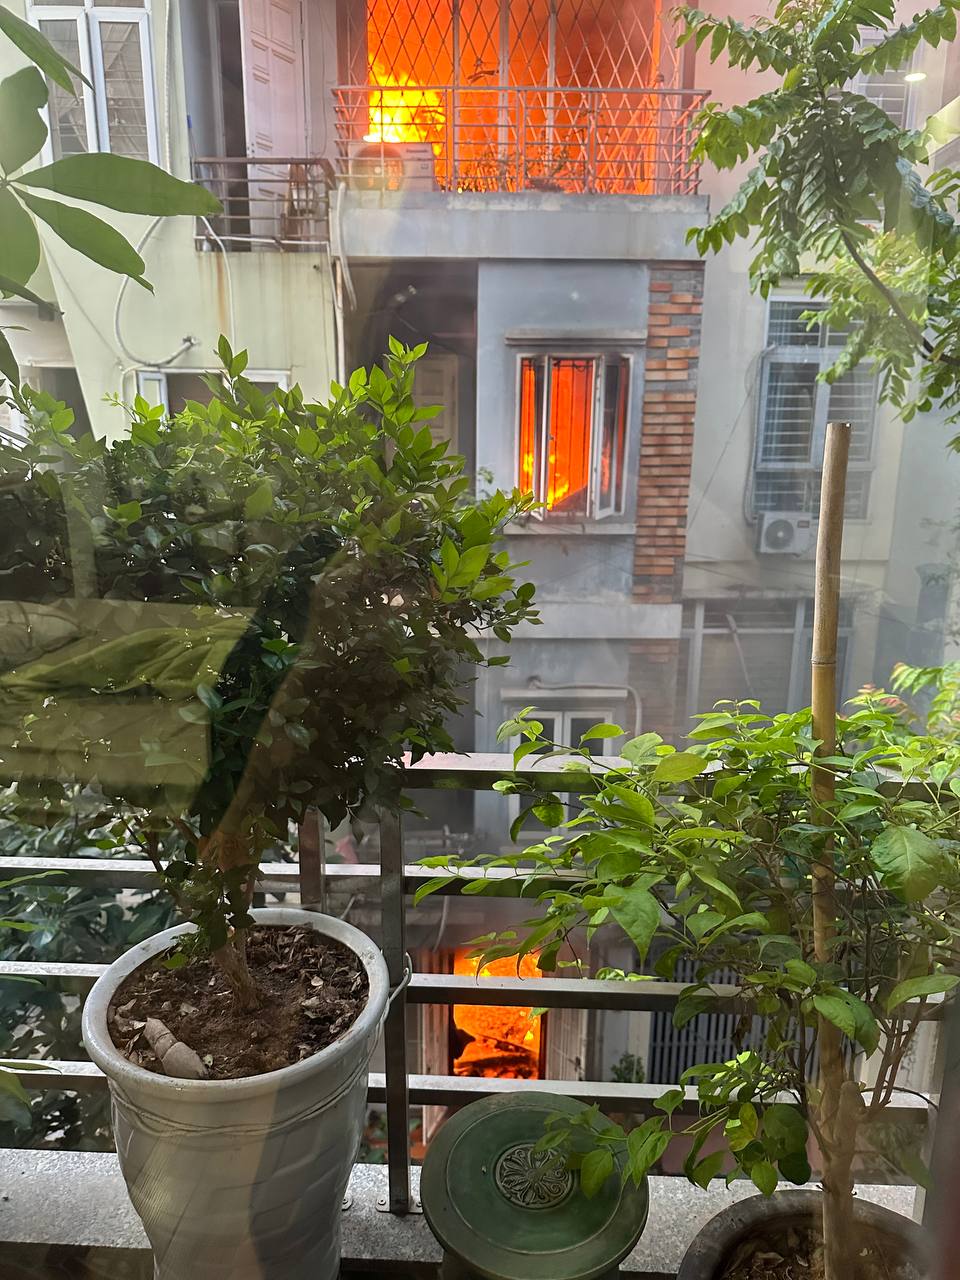 Nóng: Cháy lớn tại căn nhà 4 tầng ở Hà Nội, 2 bé trai cùng gia đình leo ban công thoát thân - Ảnh 4.